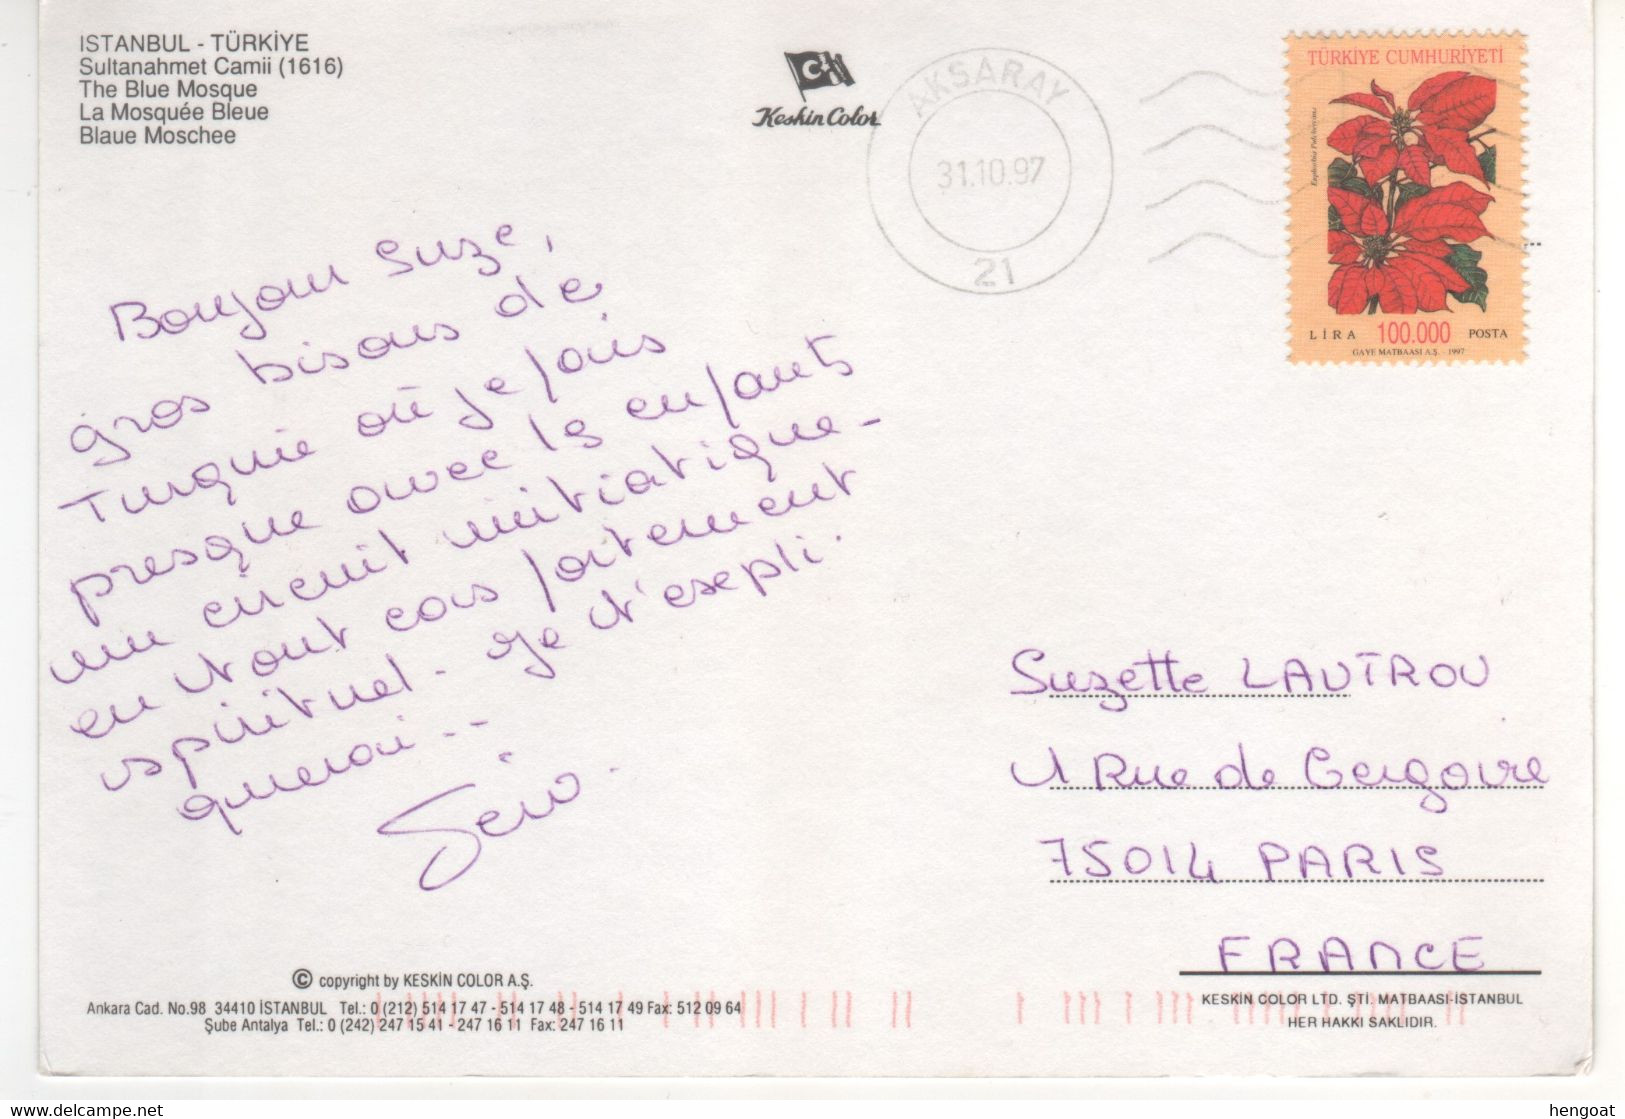 Timbre , Stamp Fleur " Euphorbia " Sur Cp , Carte , Postcard Du 31/10/97 - Briefe U. Dokumente